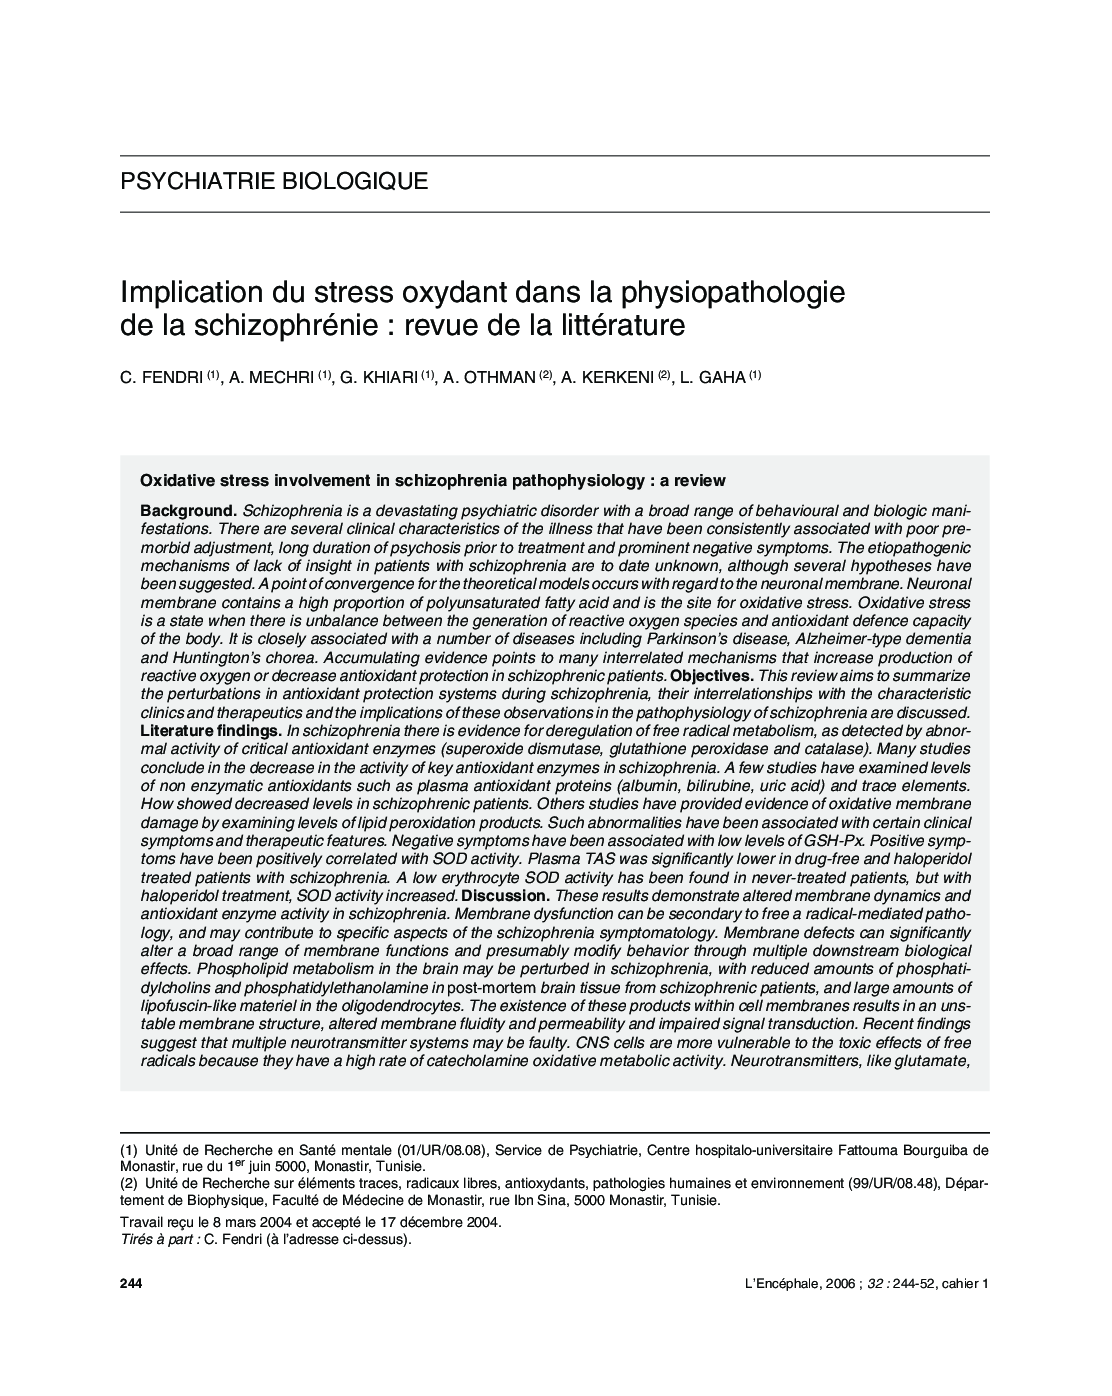 Implication du stress oxydant dans la physiopathologie de la schizophrénie : revue de la literature